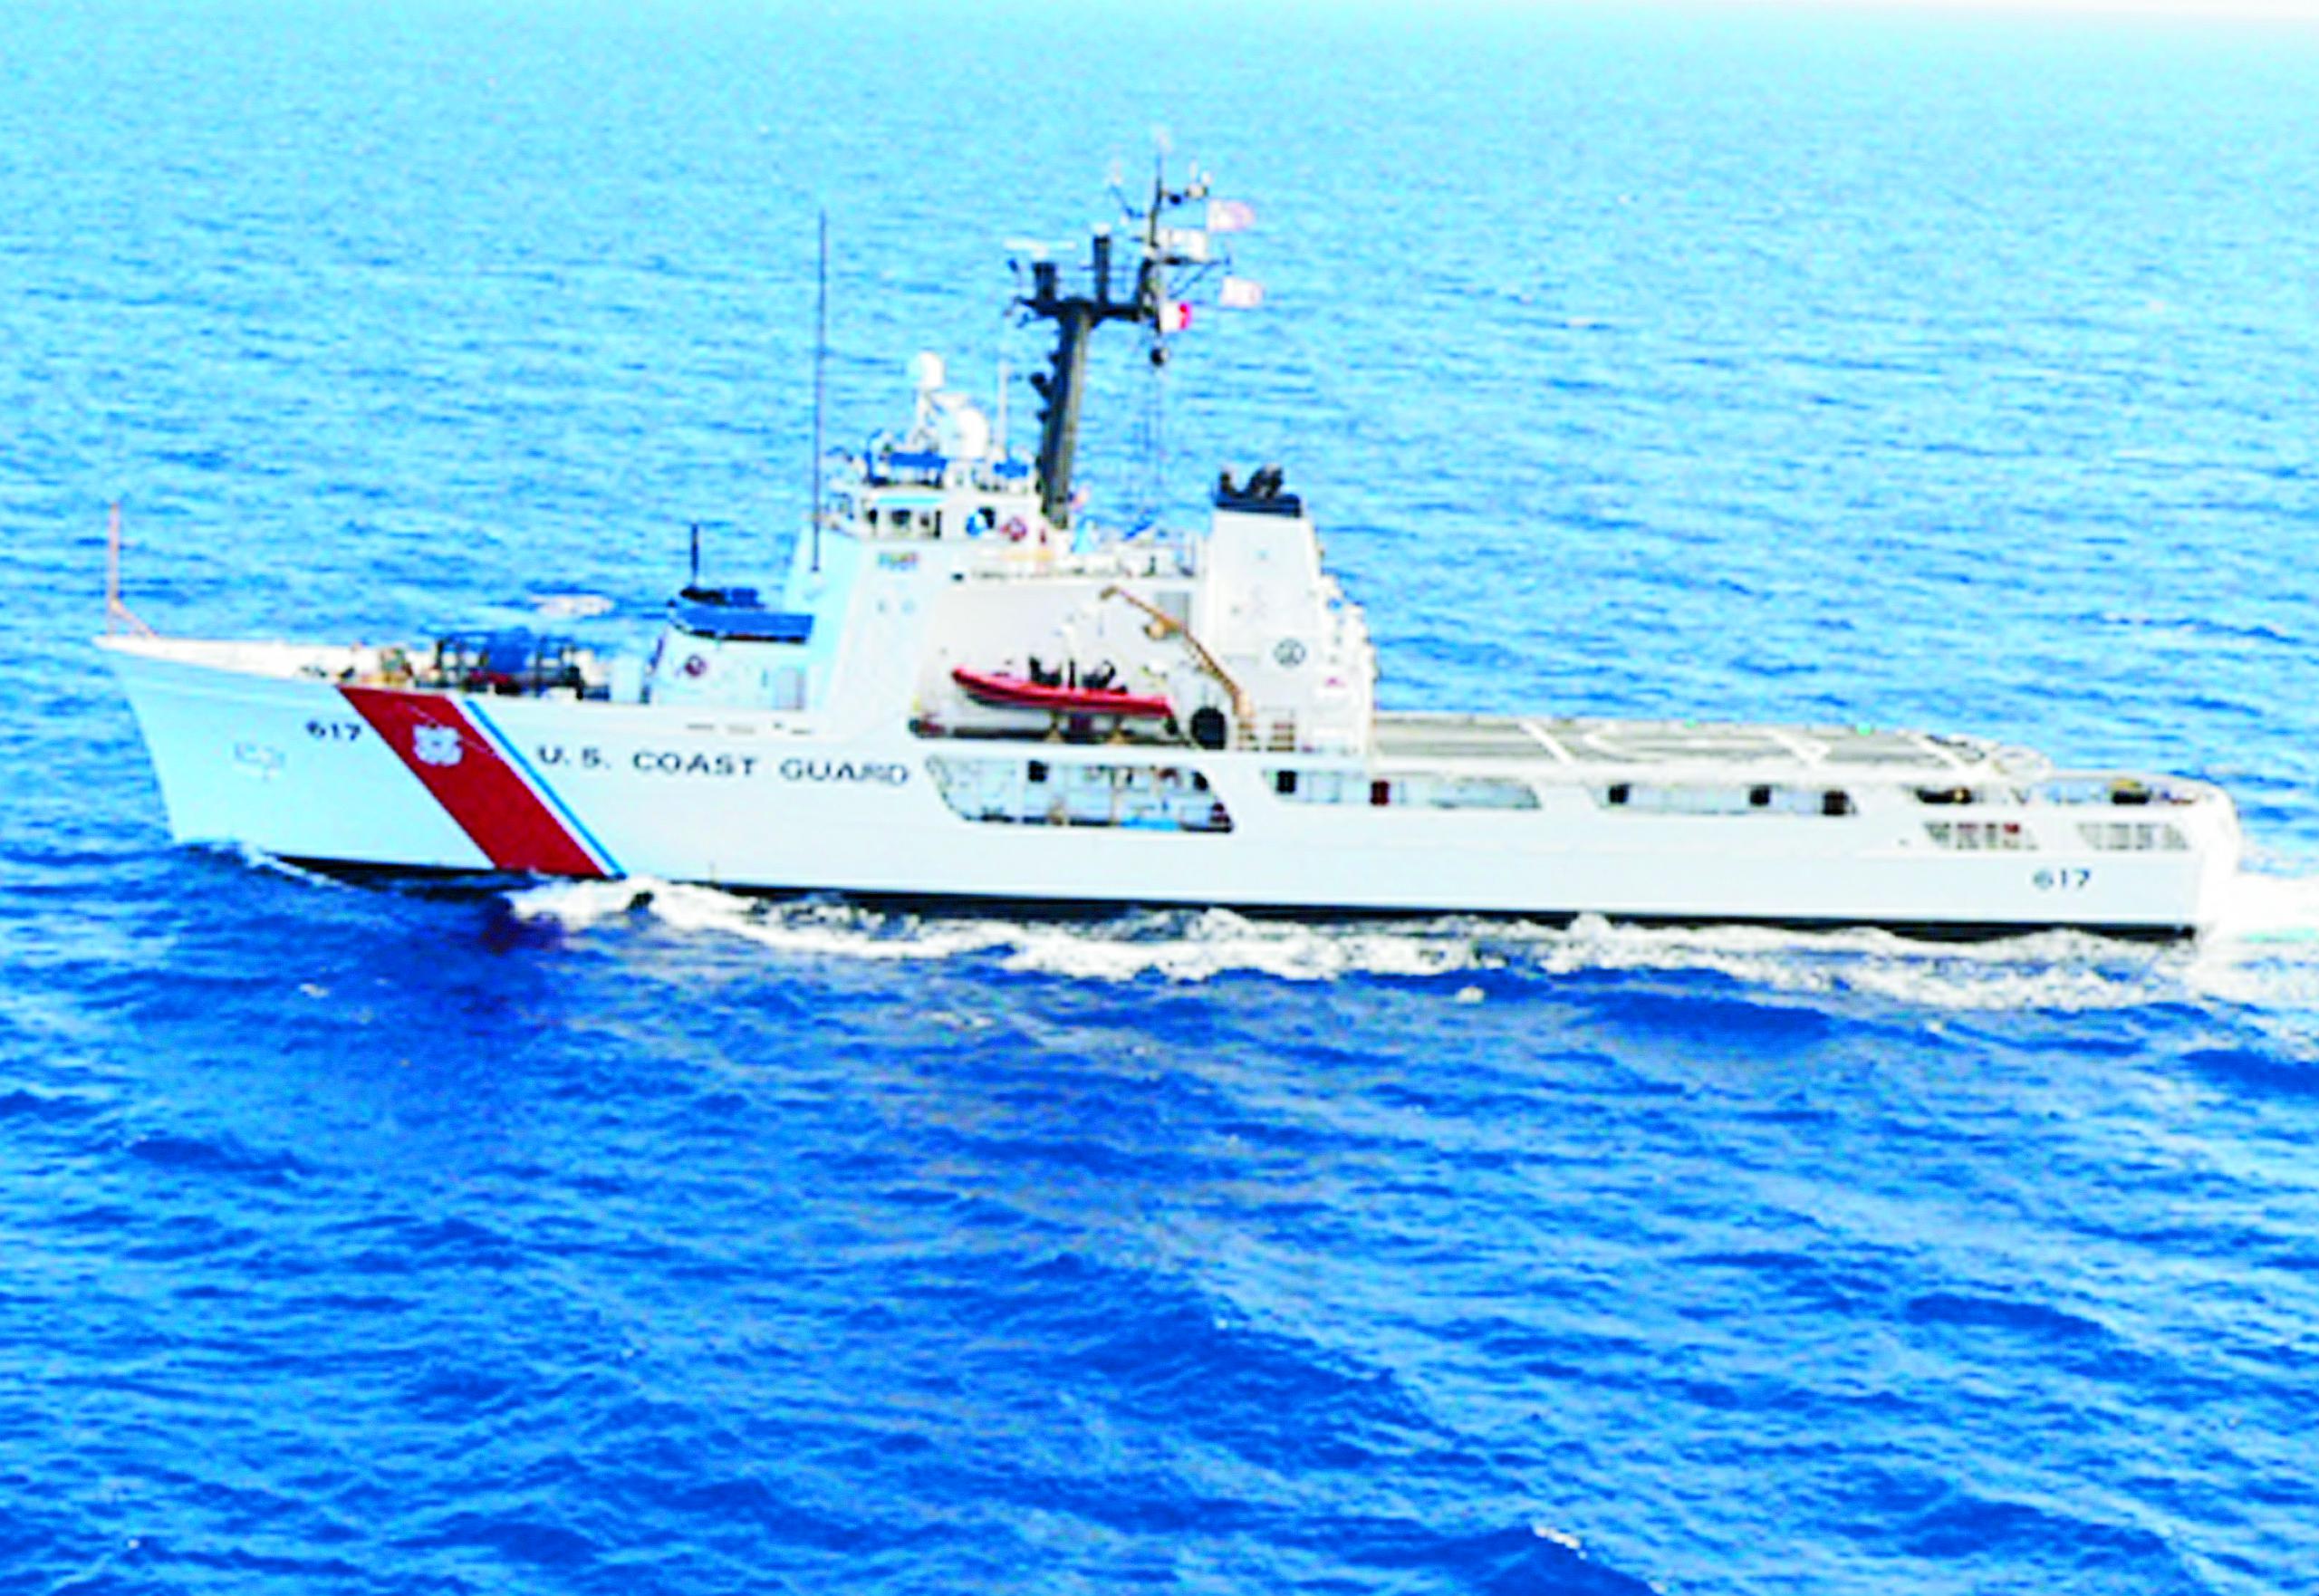 La Guardia Costera realiza la búsqueda (Coast Guard via AP)
-----